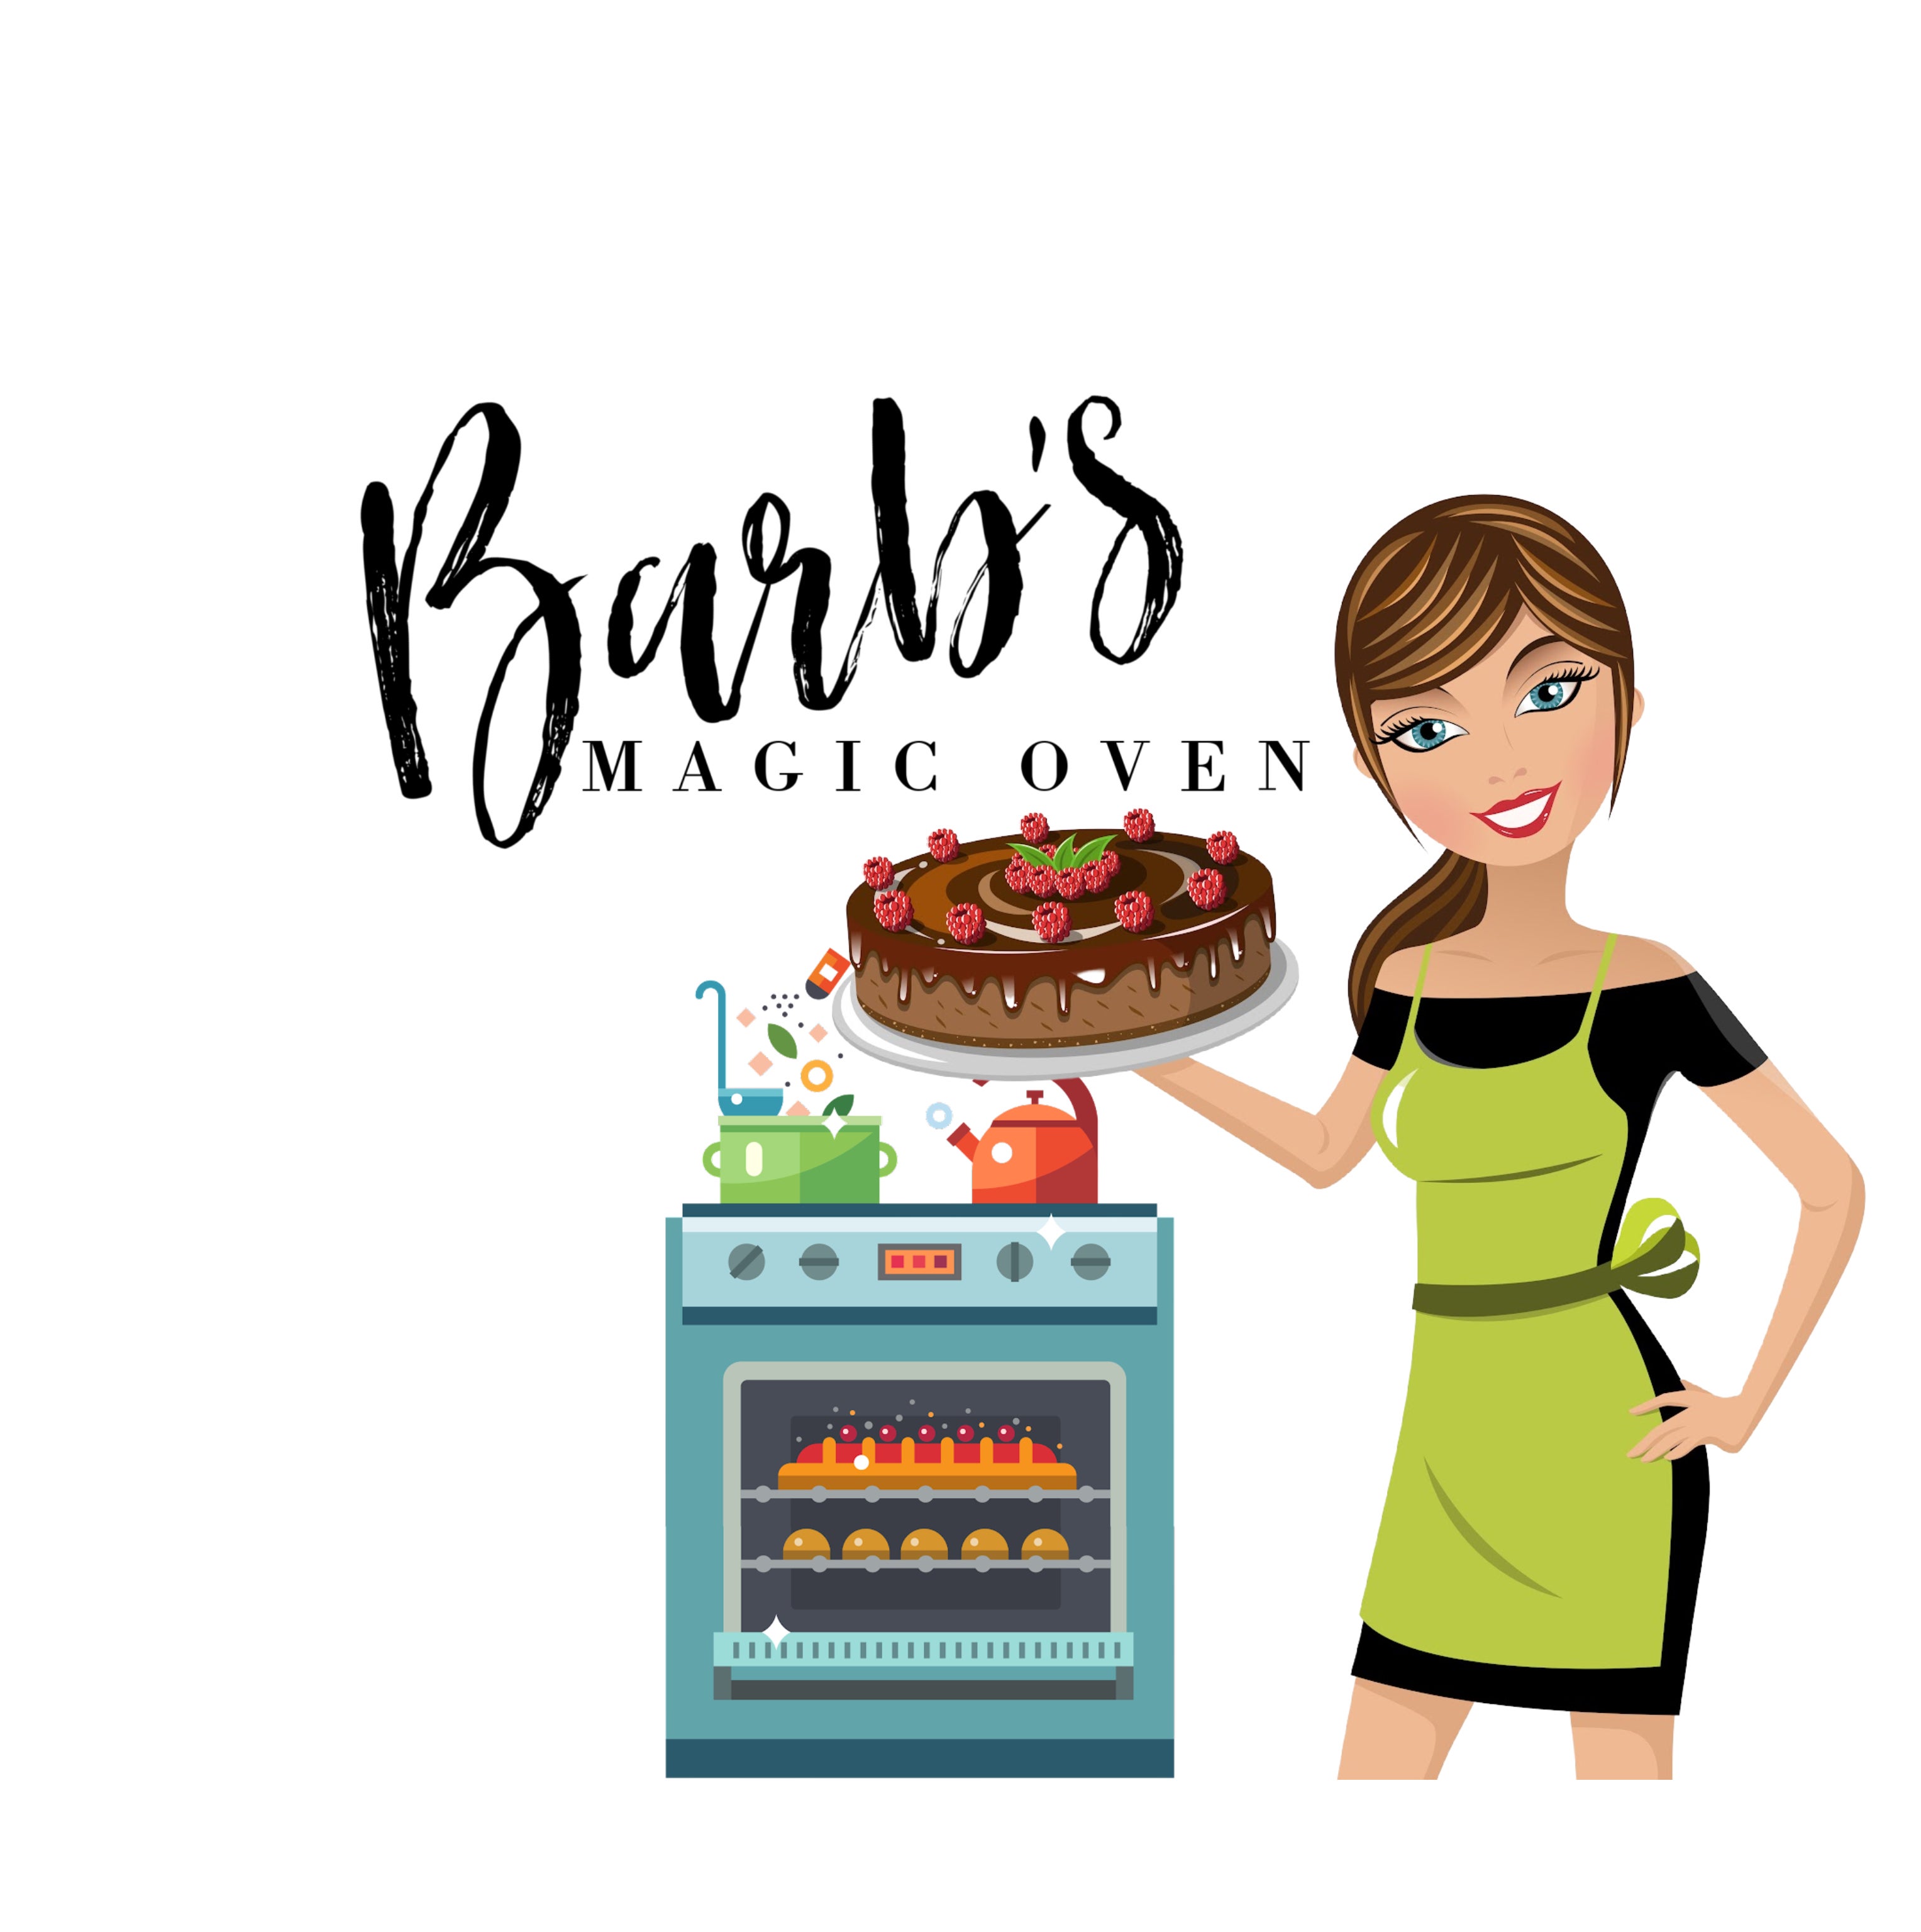 Eggless No-Oven Red Velvet Cake Recipe! - Bake with Shivesh